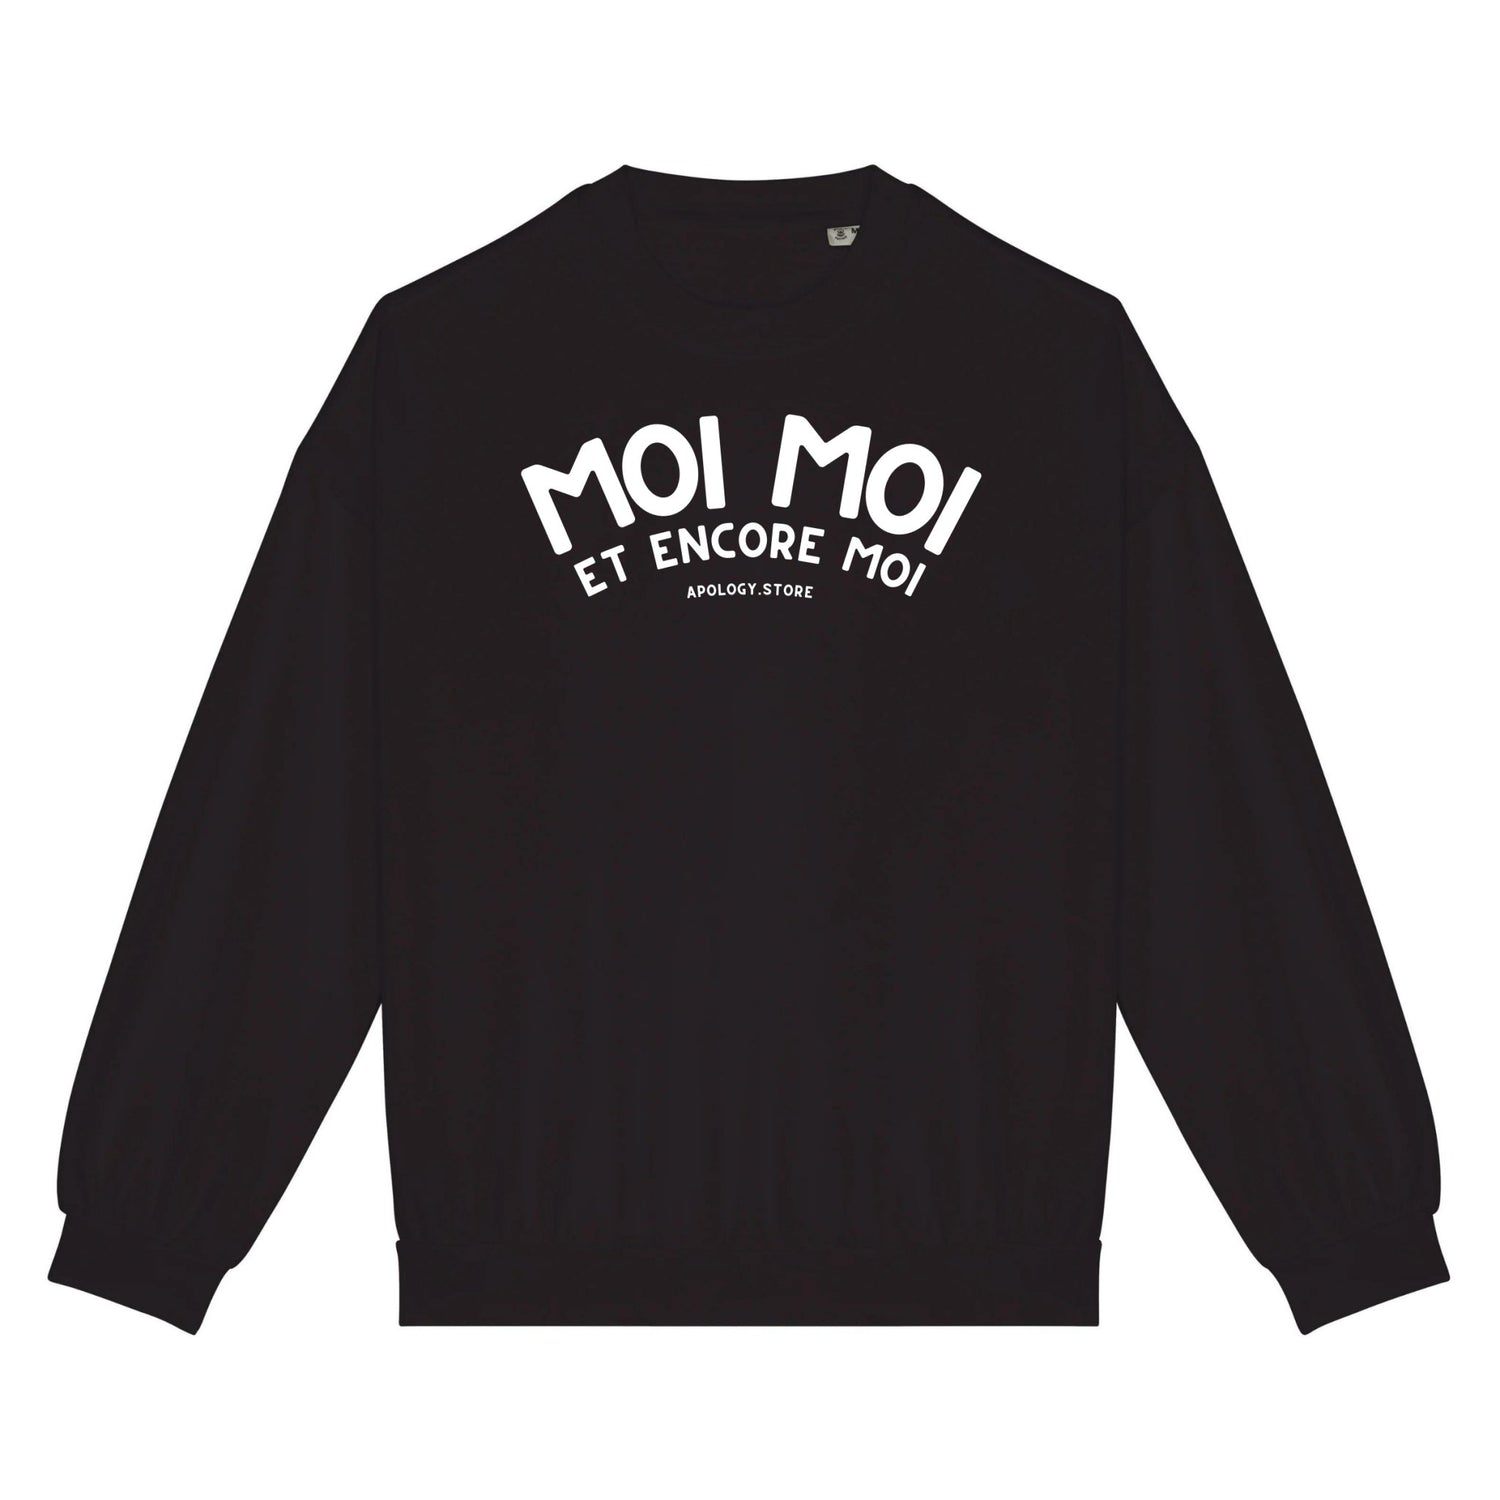 Sweat-shirt Moi Moi Et Moi Encore - Fabriqué au Portugal XS Noir - Imprimé en France